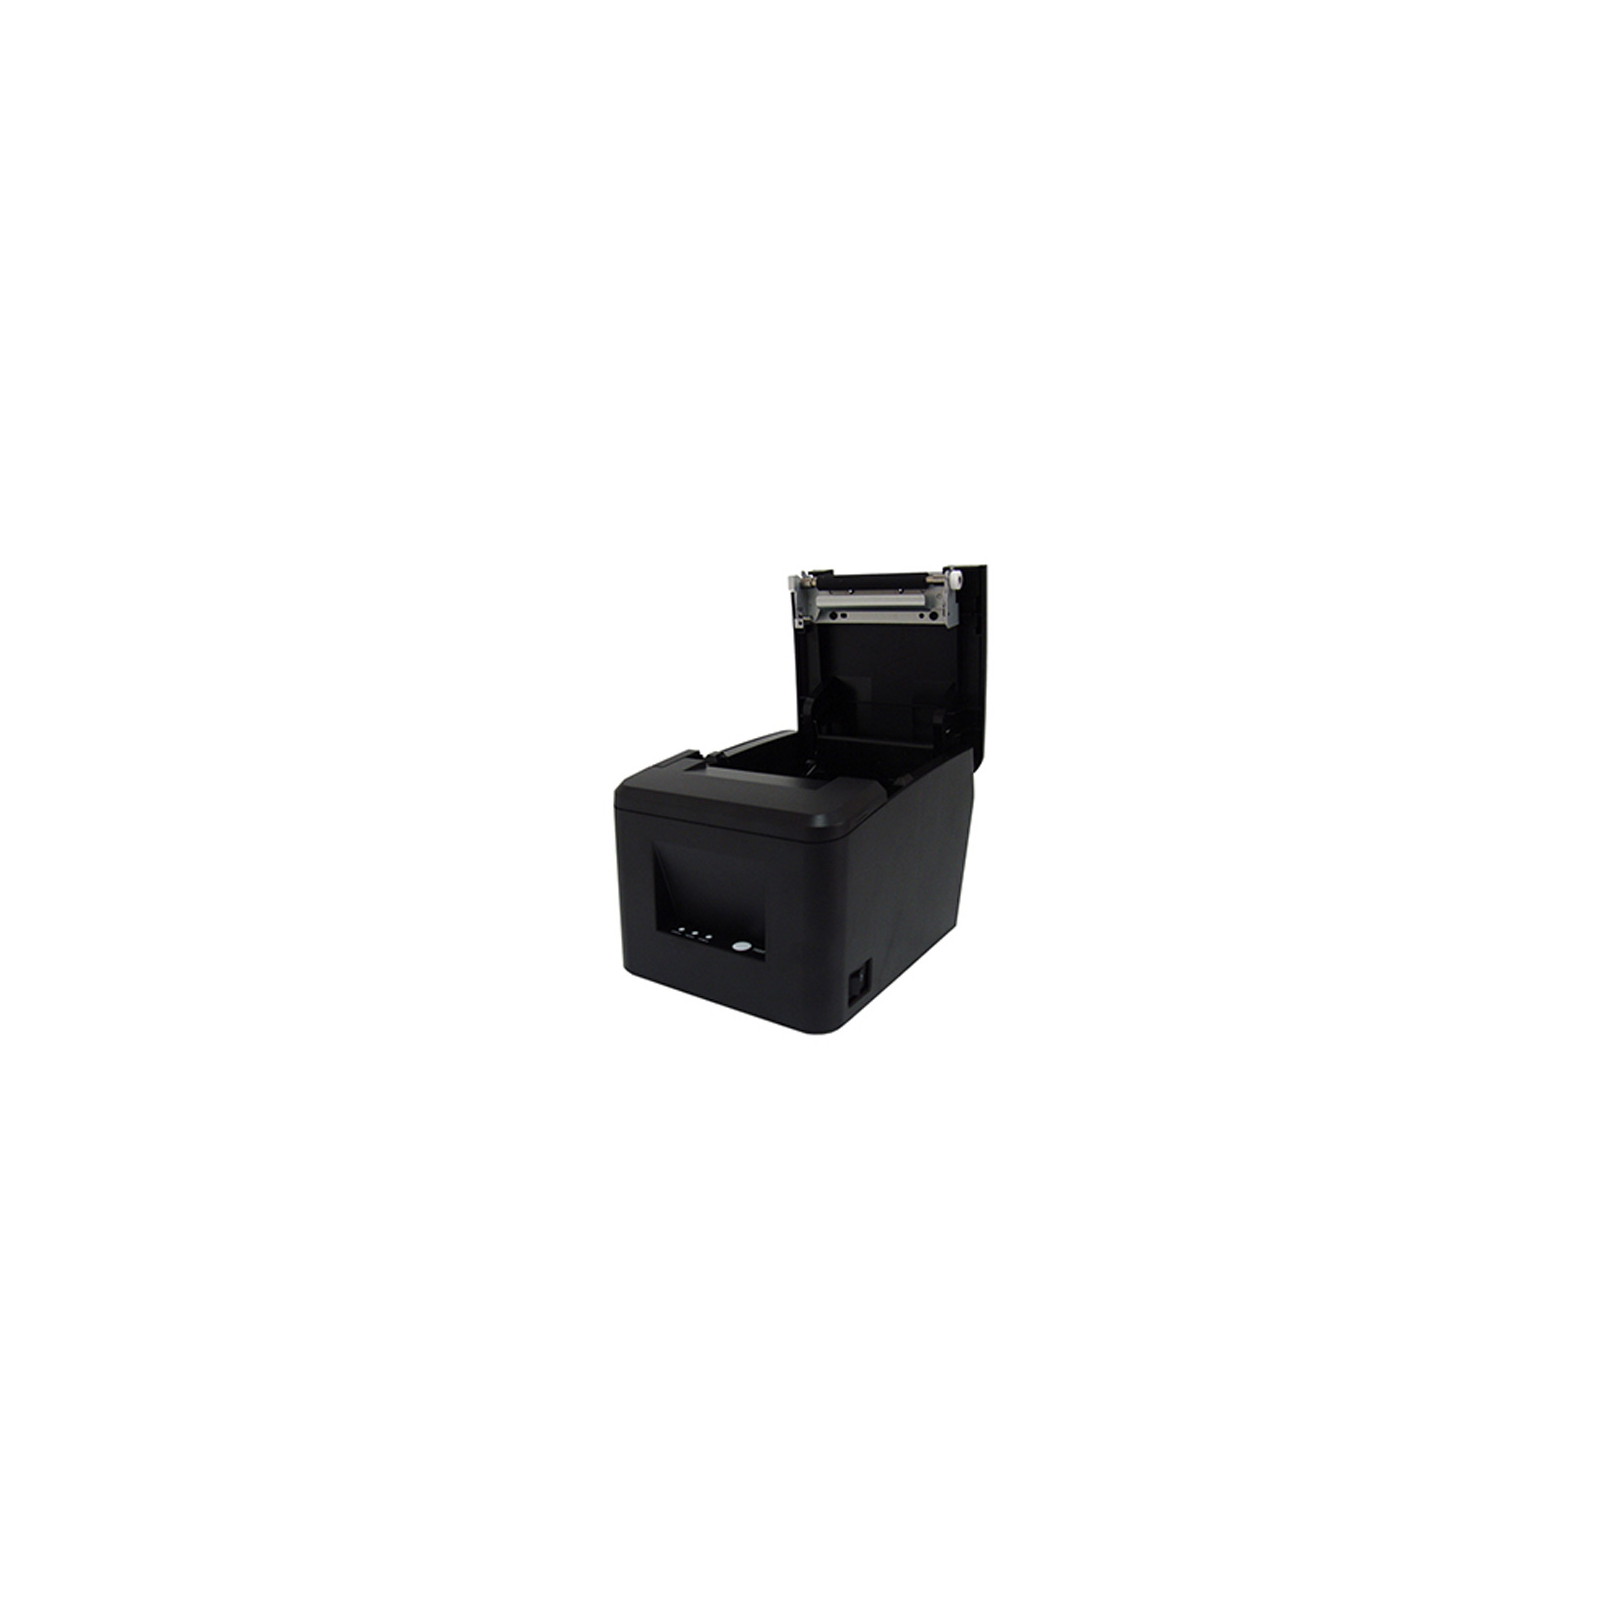 Принтер чеков HPRT POS80FE USB, Serial, Ethernet, чорний (16377) изображение 5